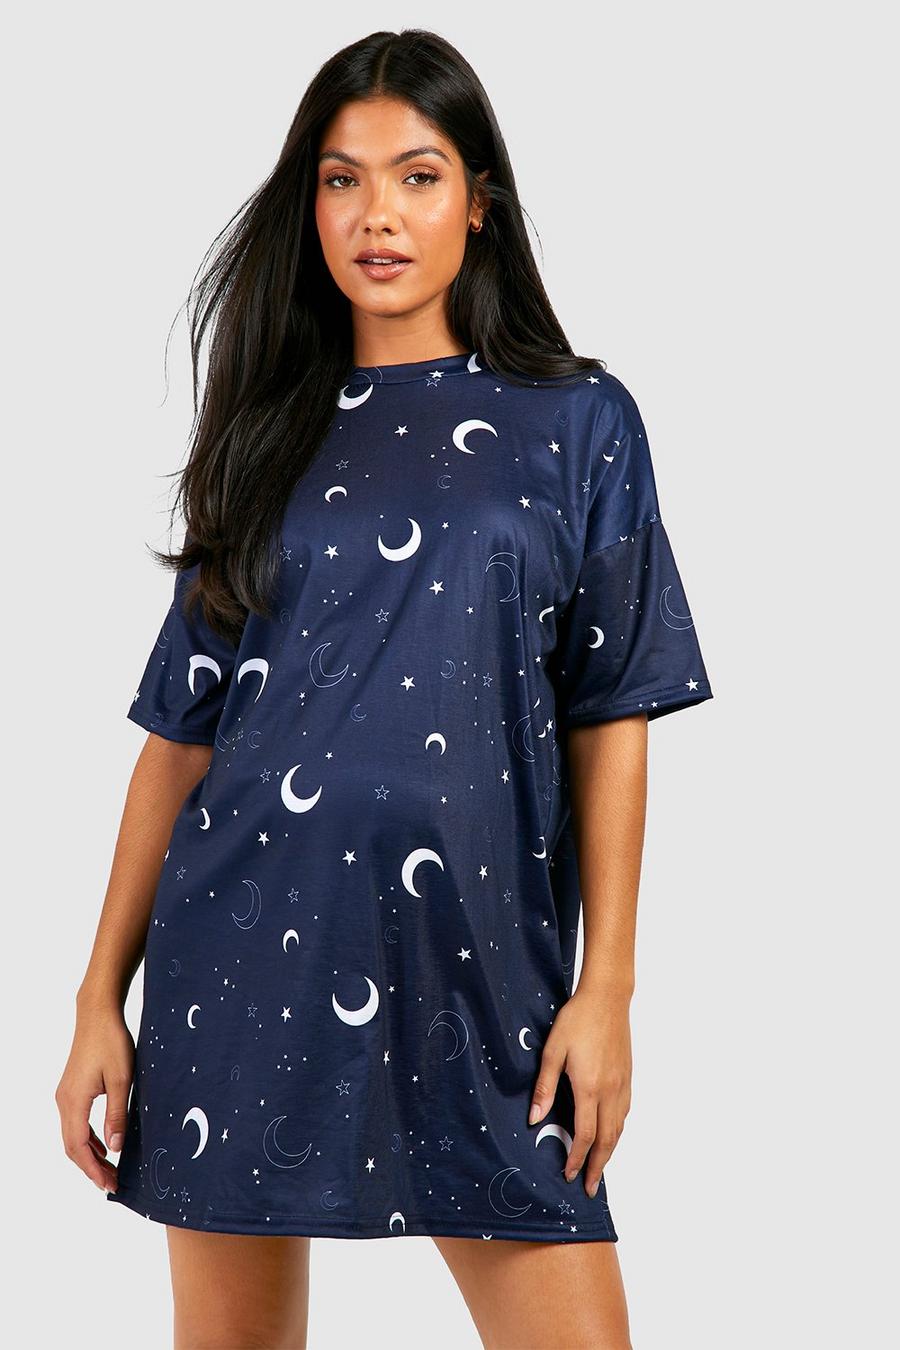 Camicia da notte Premaman con stampa di stelle celesti, Navy